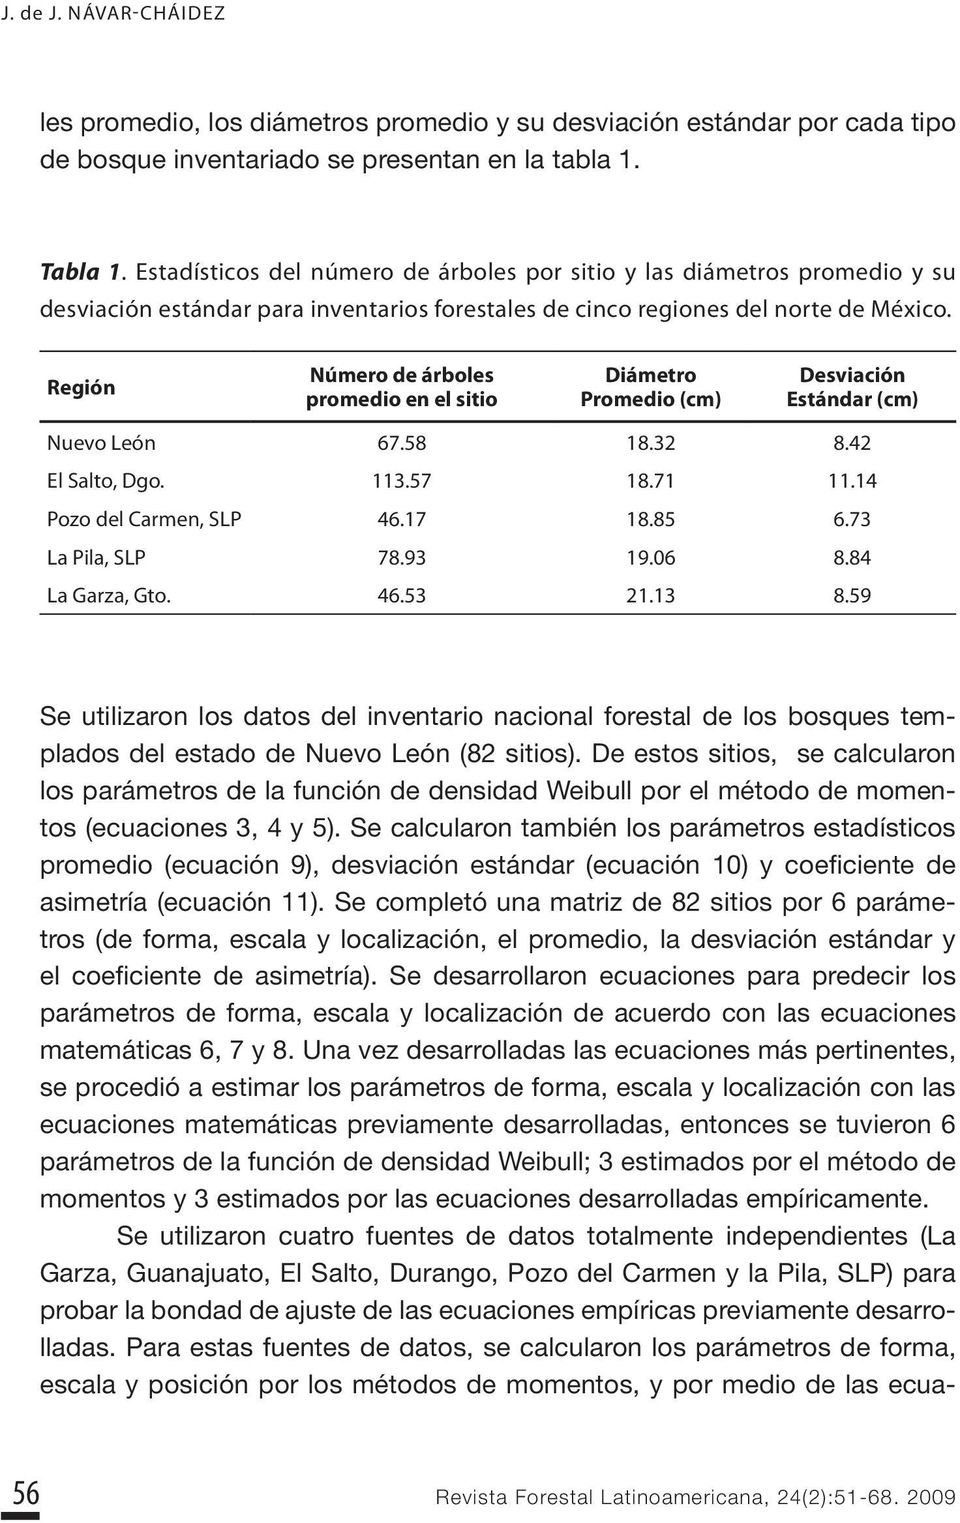 Región Número de árboles promedio en el sitio Diámetro Promedio (cm) Desviación Estándar (cm) Nuevo León 67.58 18.3 8.4 El Salto, Dgo. 113.57 18.71 11.14 Pozo del Carmen, SLP 46.17 18.85 6.